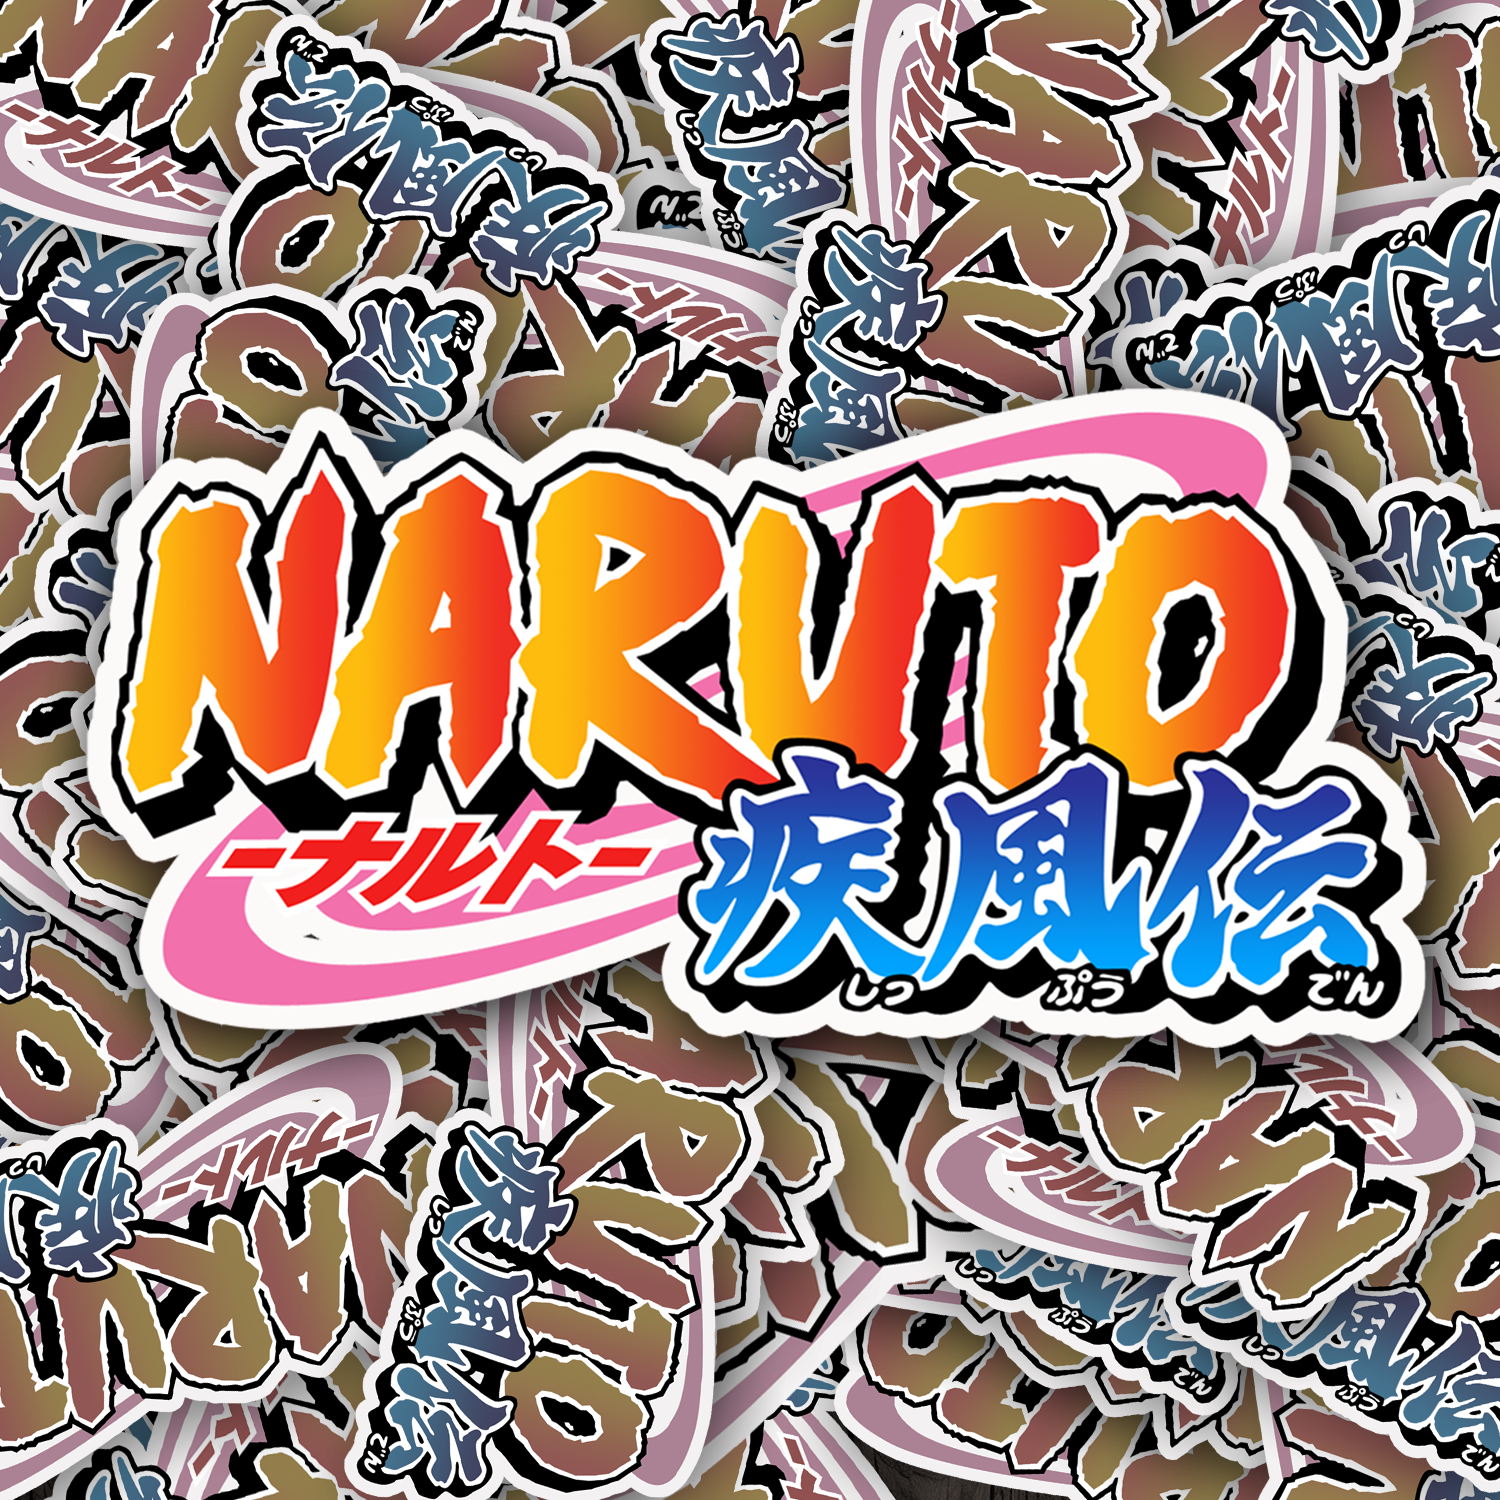 Naruto Logo Sticker - Turbo Vinyl